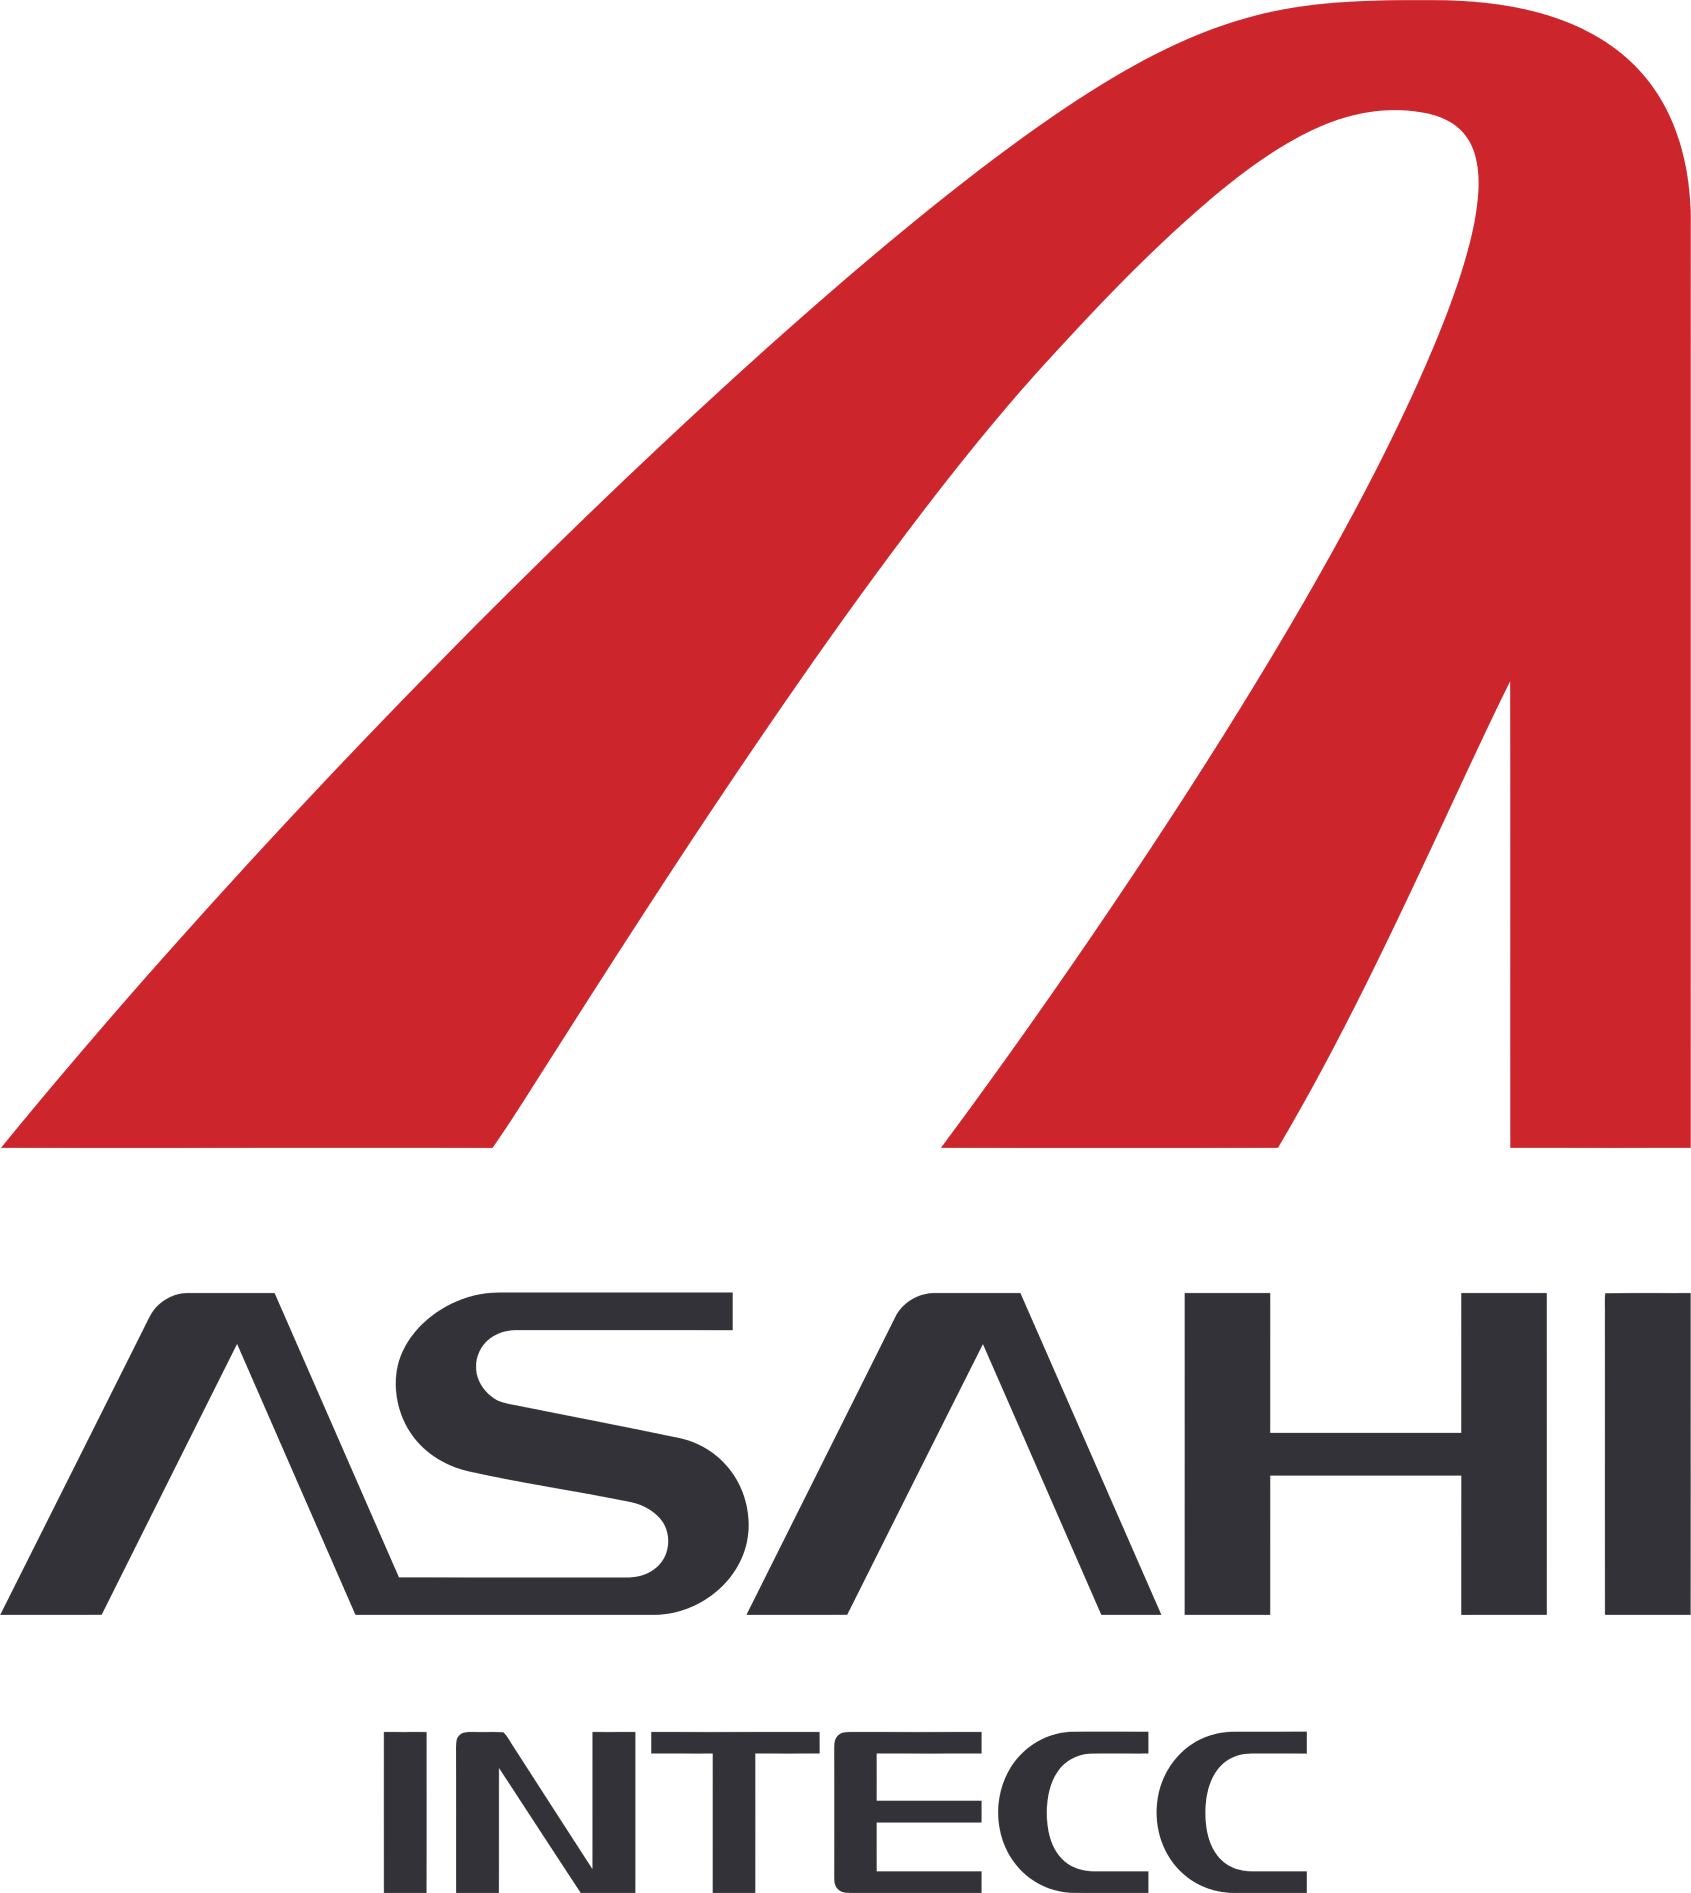 Asahi Intecc logo large (transparent PNG)